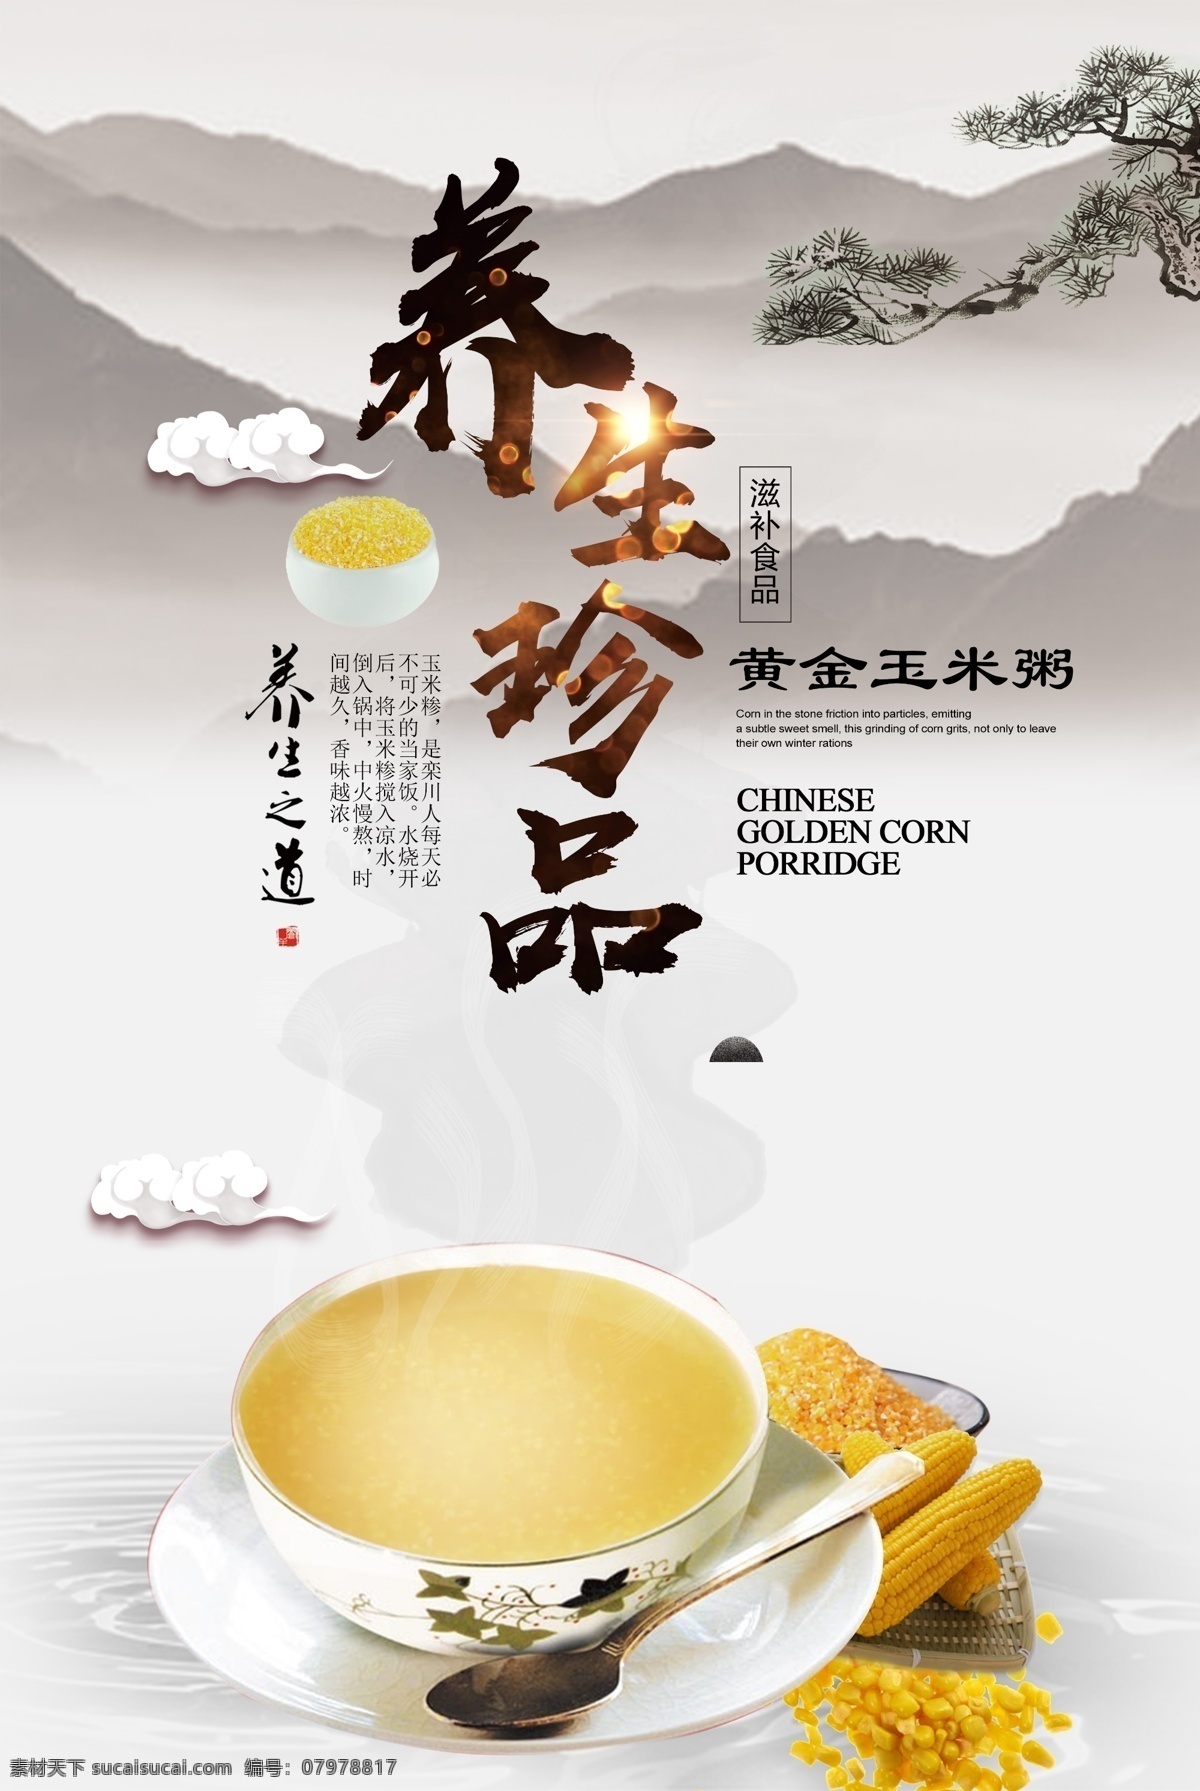 糁汤海报图片 养生 粥品海报 糁 玉米 宣传单页 地方美食 中国传统食物